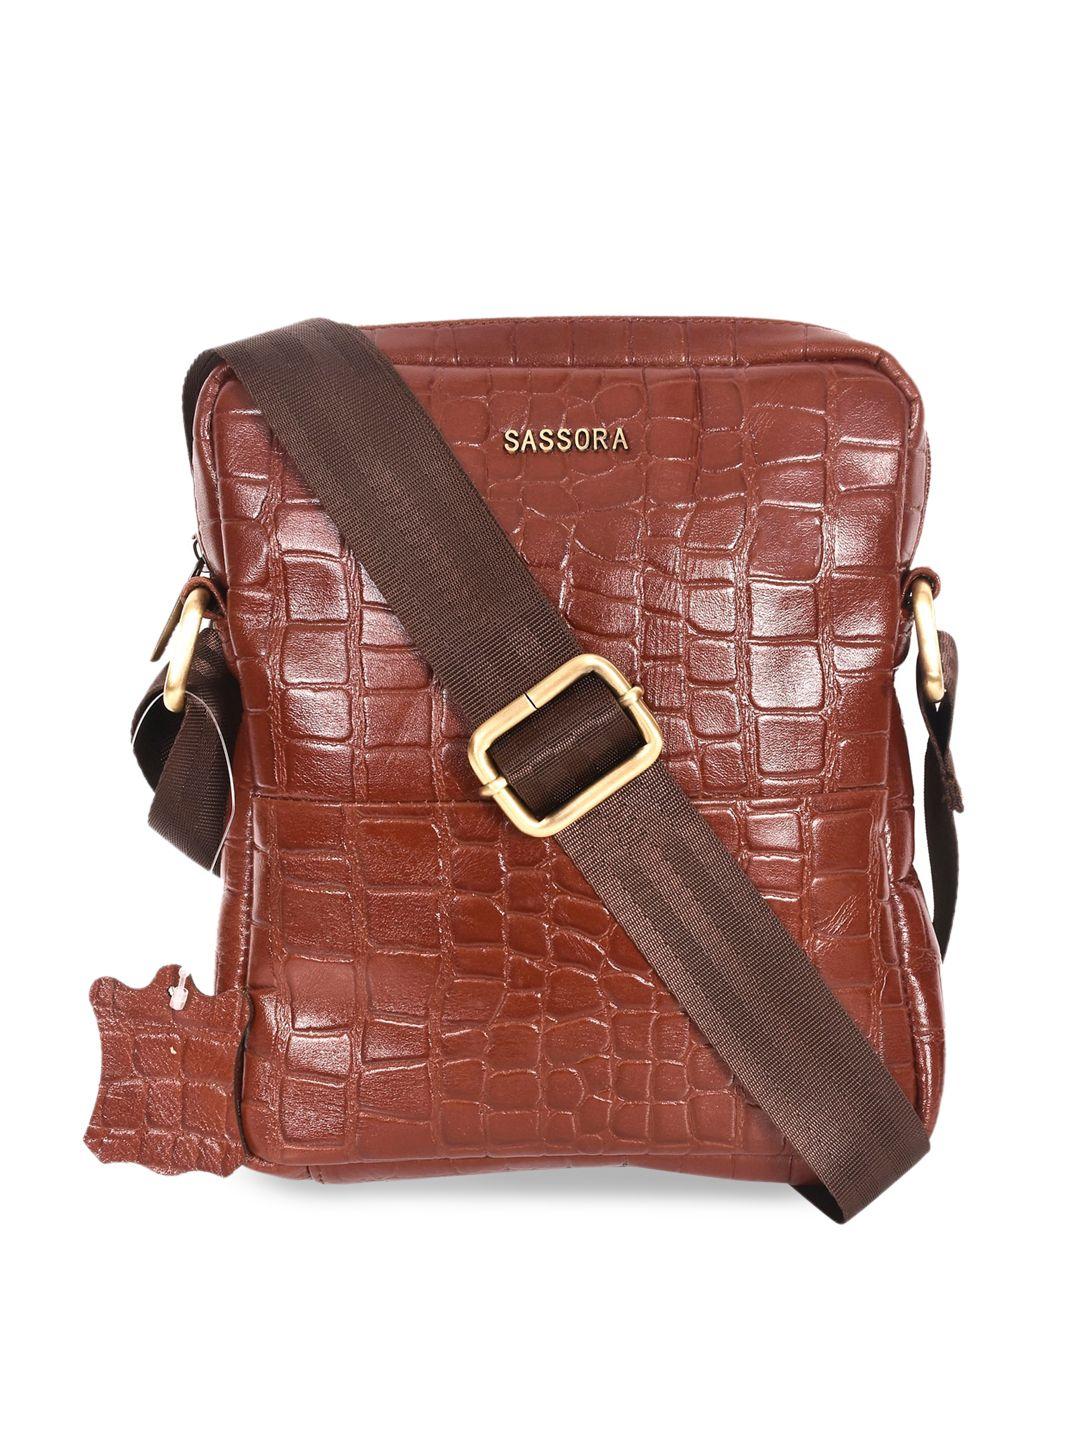 sassora brown leather structured sling bag